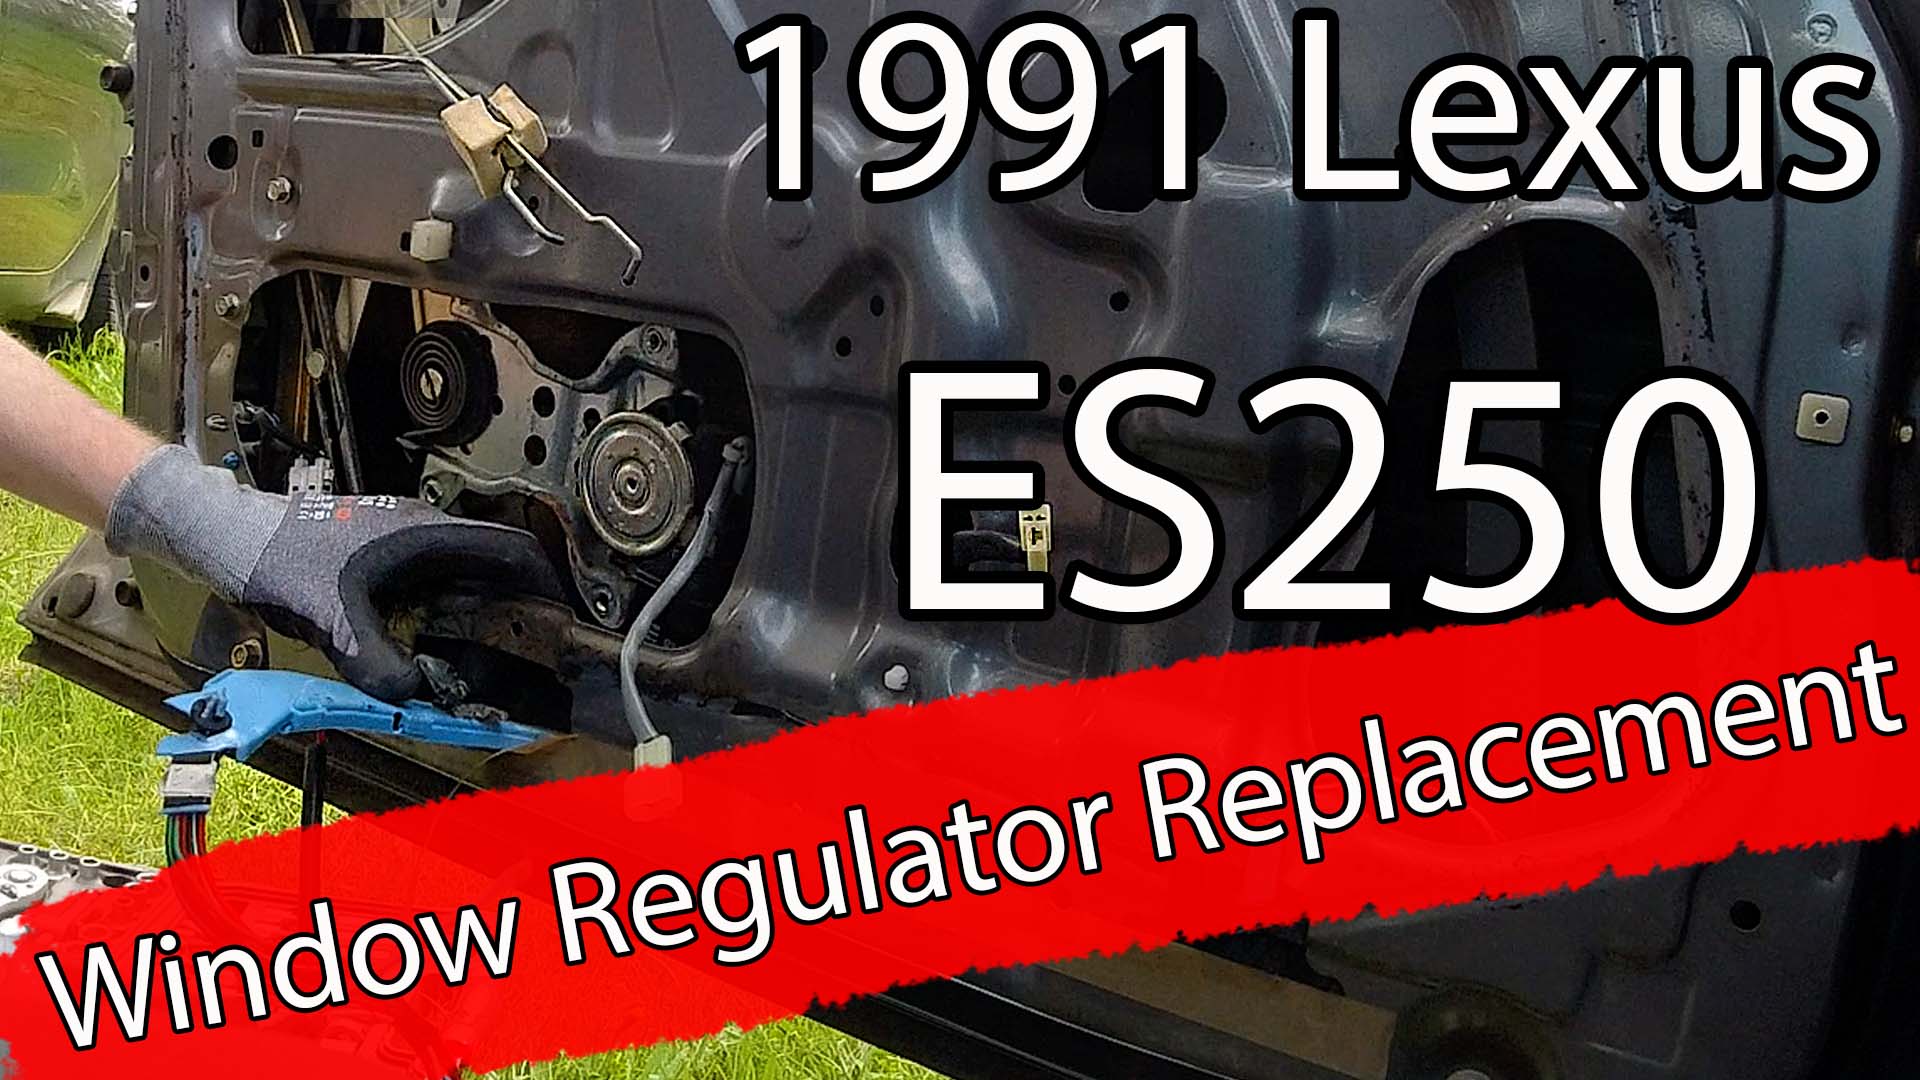 Ny el motor til vindu på 1991 Lexus ES250